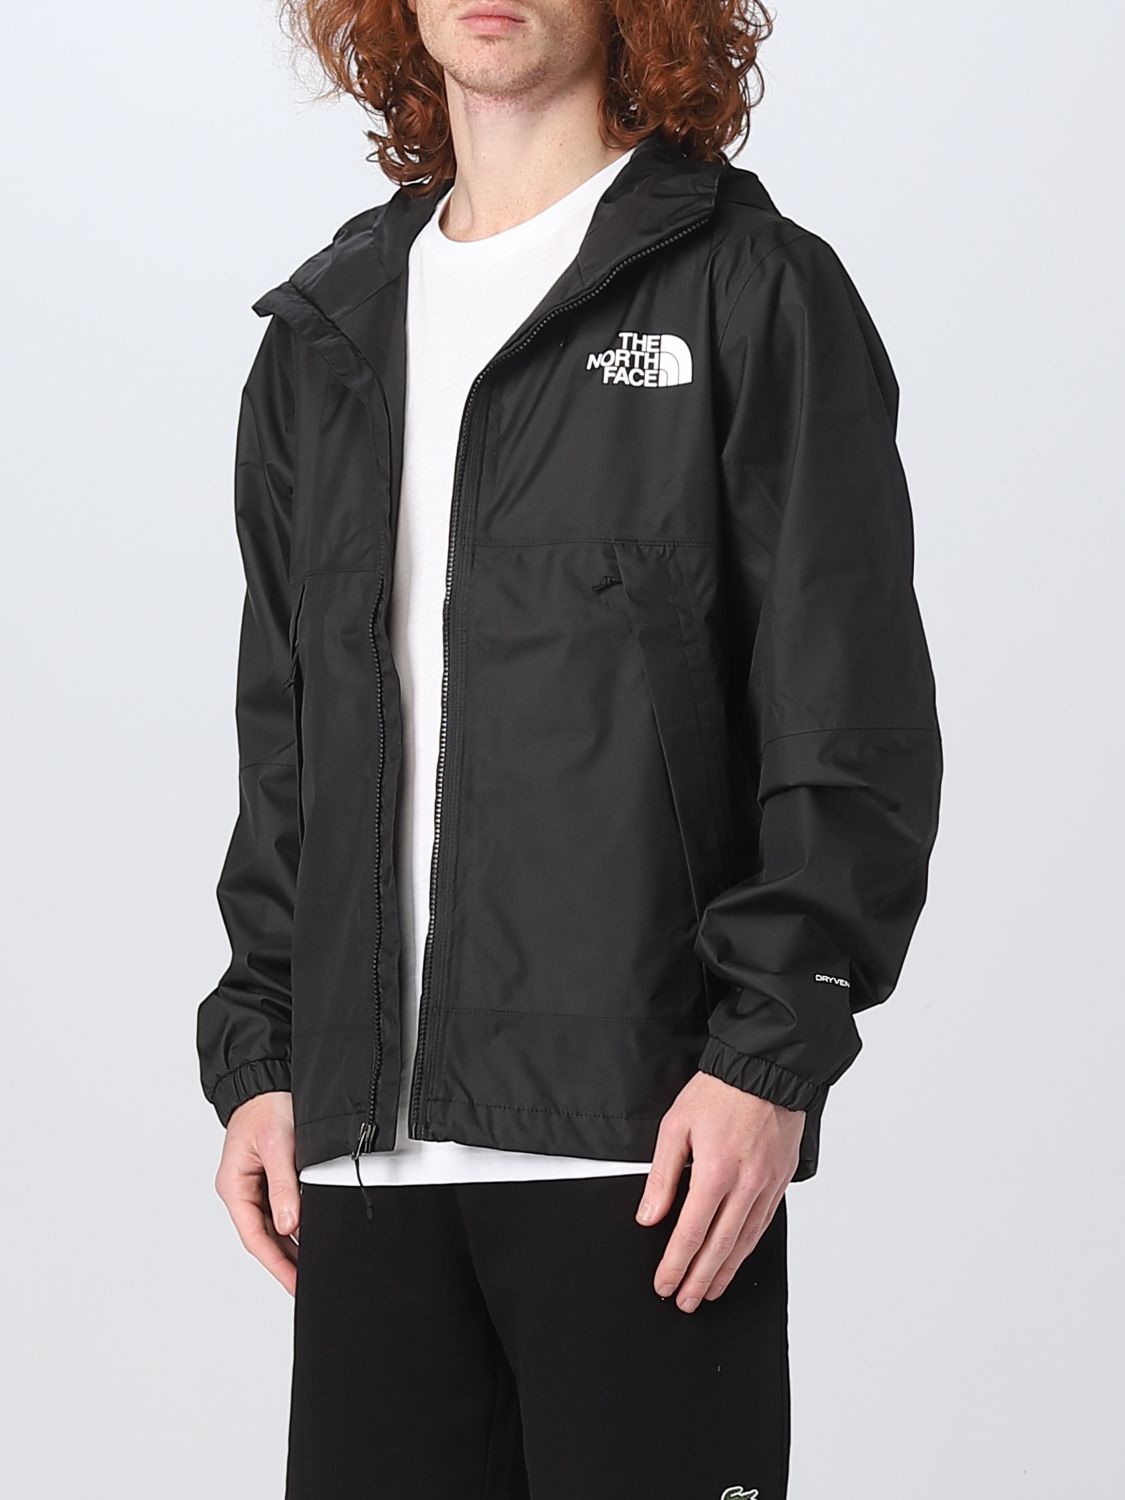 Raad eens maagd haalbaar THE NORTH FACE: jacket for man - Black | The North Face jacket NF0A5IG2  online on GIGLIO.COM